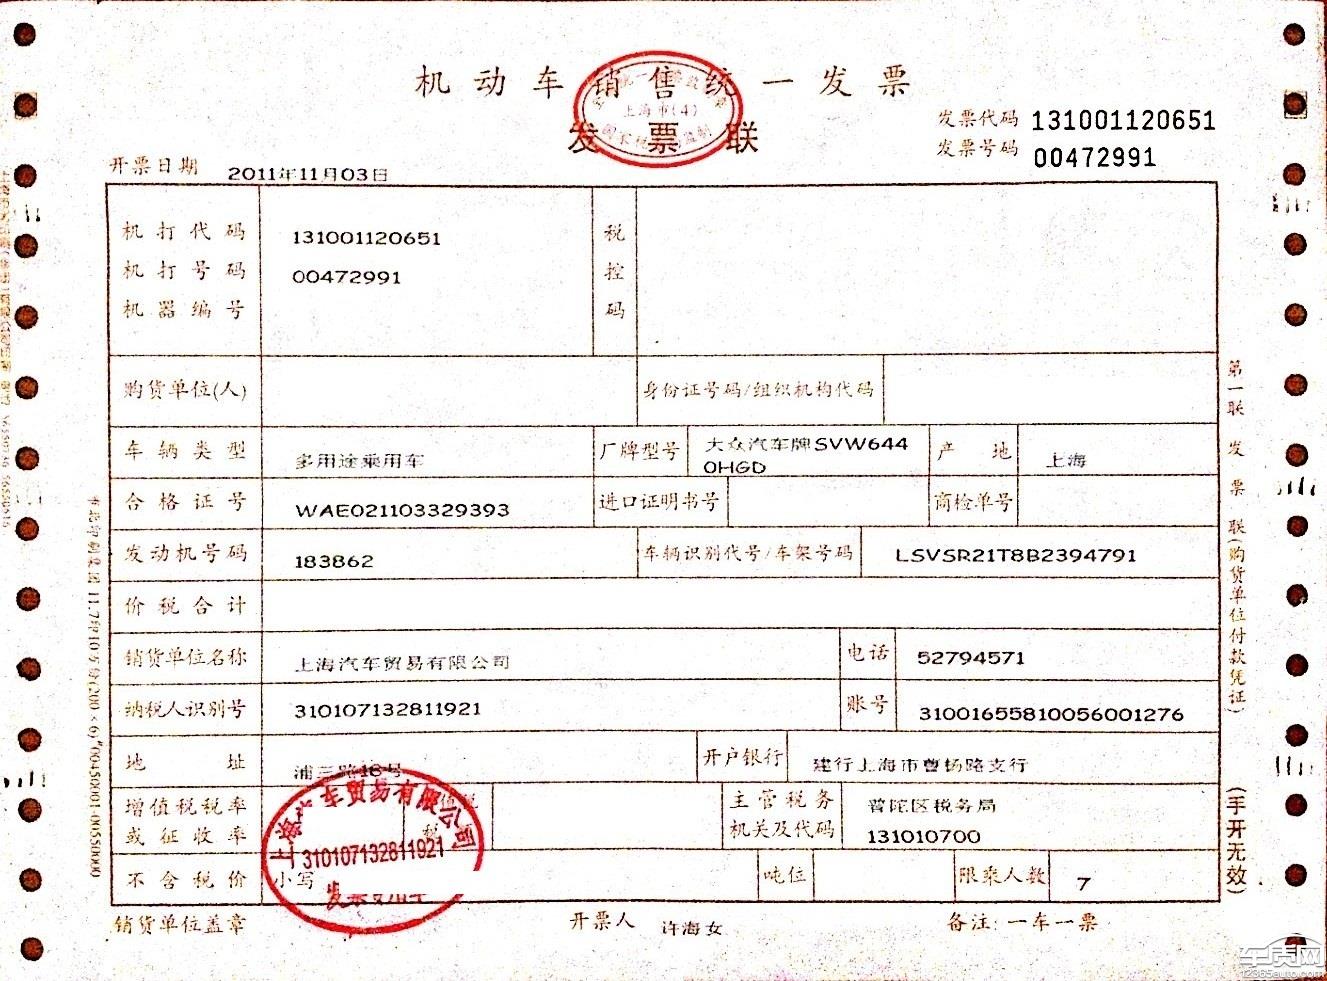 上海大众途安厂家不召回DSG车辆